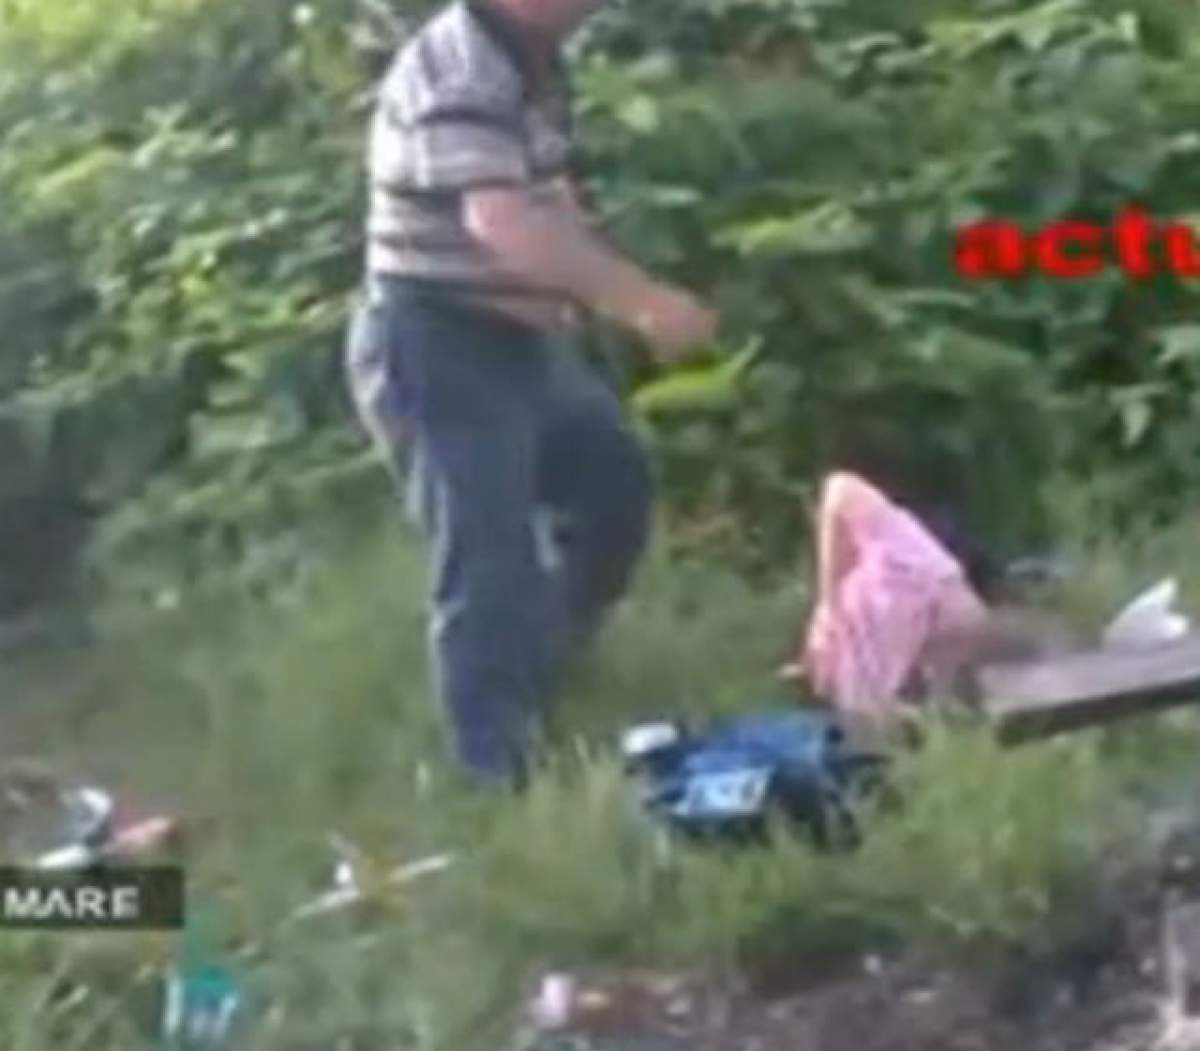 VIDEO / Scene greu de privit! O bătrână a fost lovită cu bestialitate în plină zi